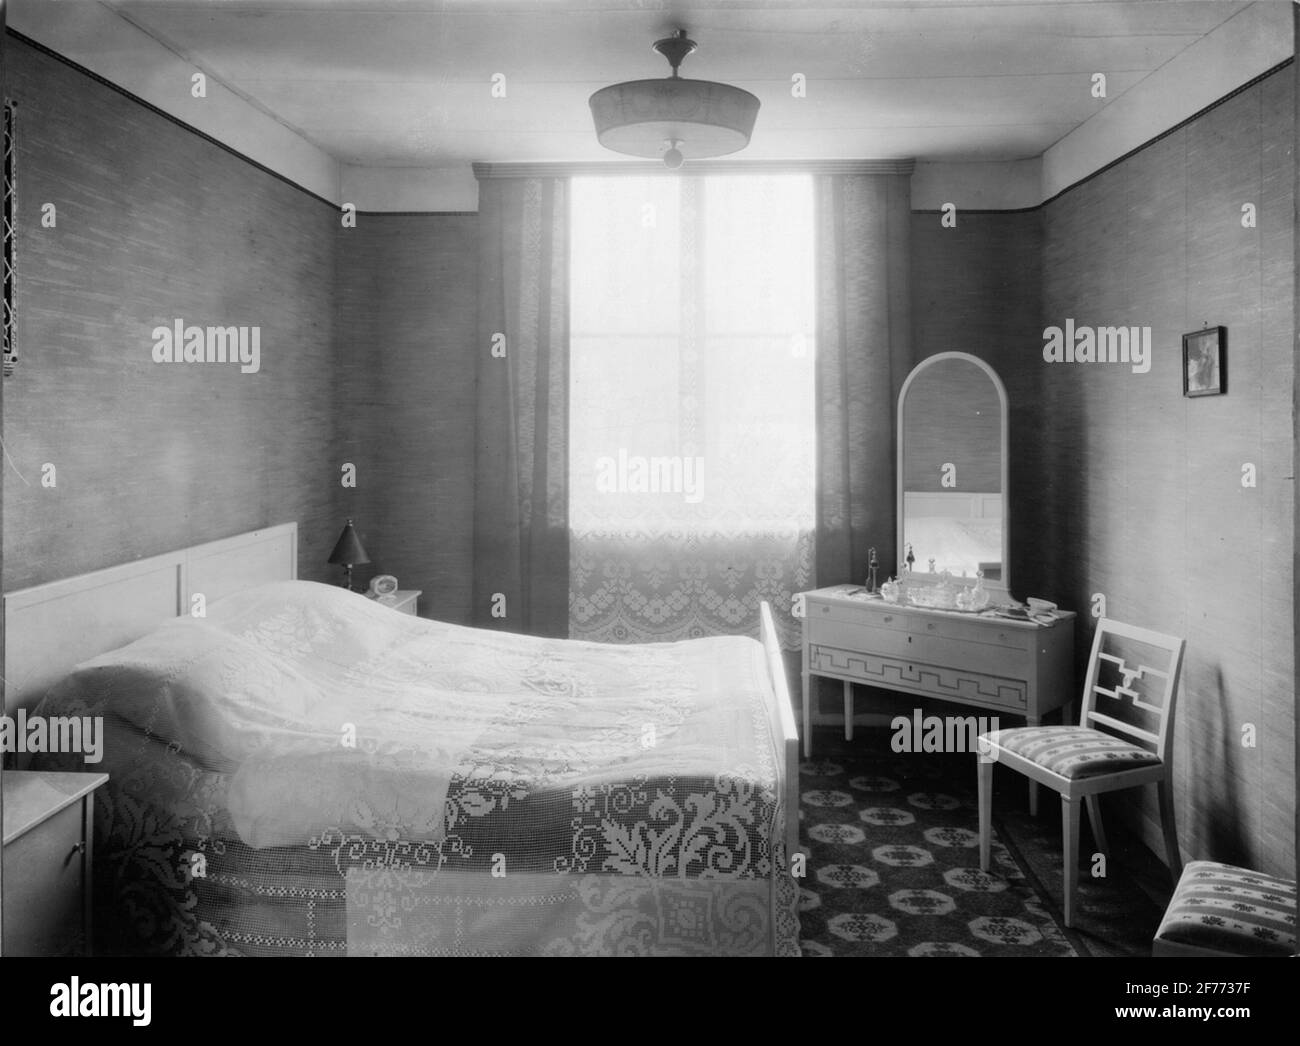 Chambre 1930 Banque d'images noir et blanc - Alamy